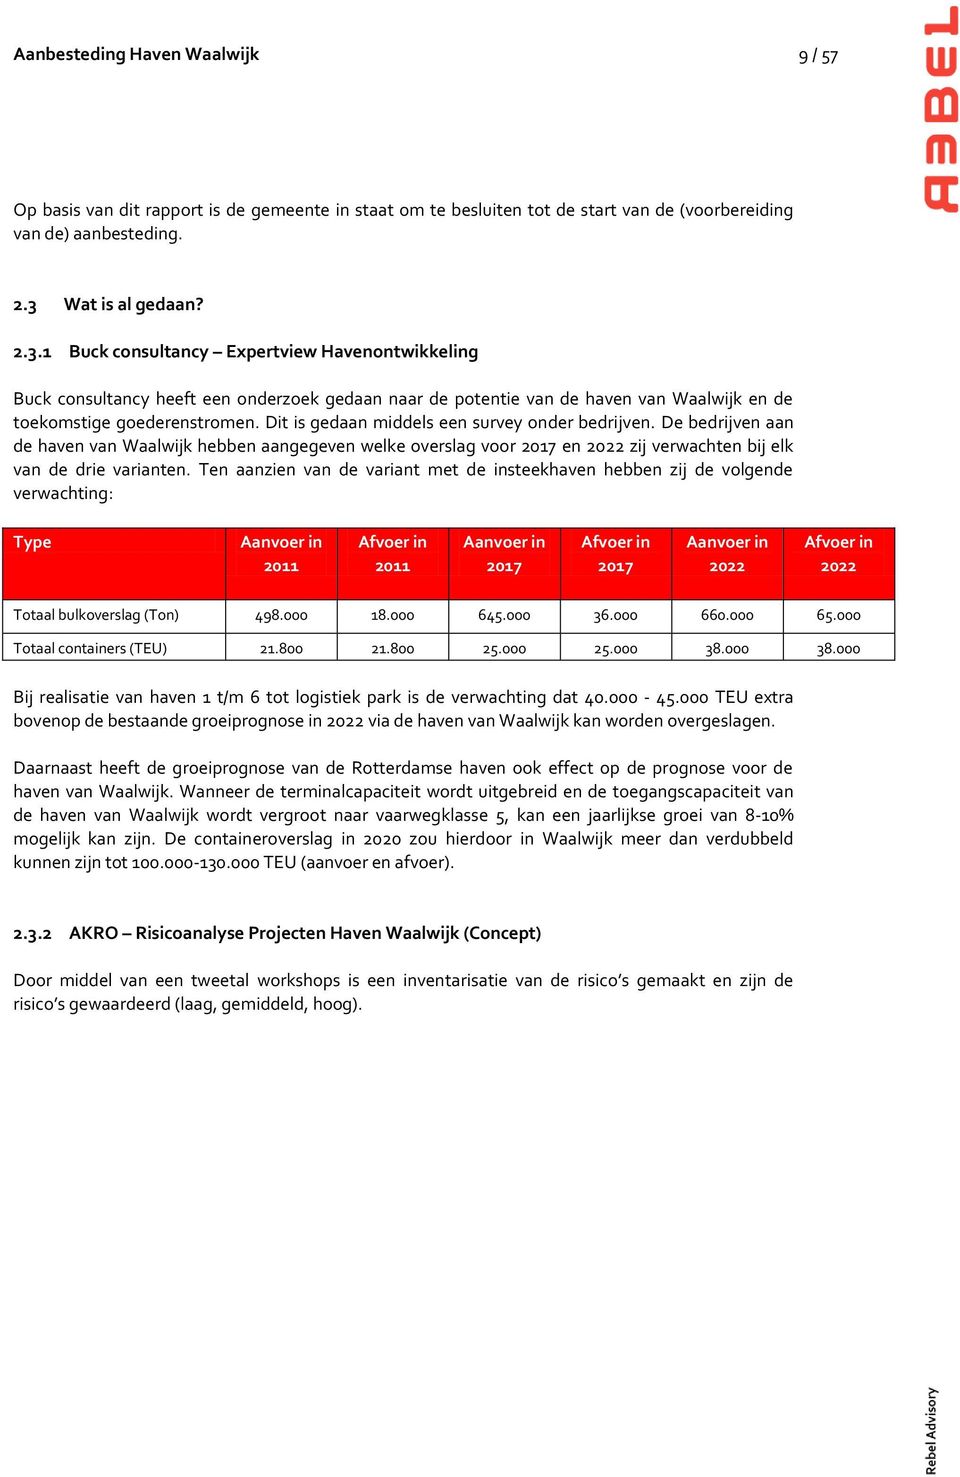 Dit is gedaan middels een survey onder bedrijven. De bedrijven aan de haven van Waalwijk hebben aangegeven welke overslag voor 2017 en 2022 zij verwachten bij elk van de drie varianten.